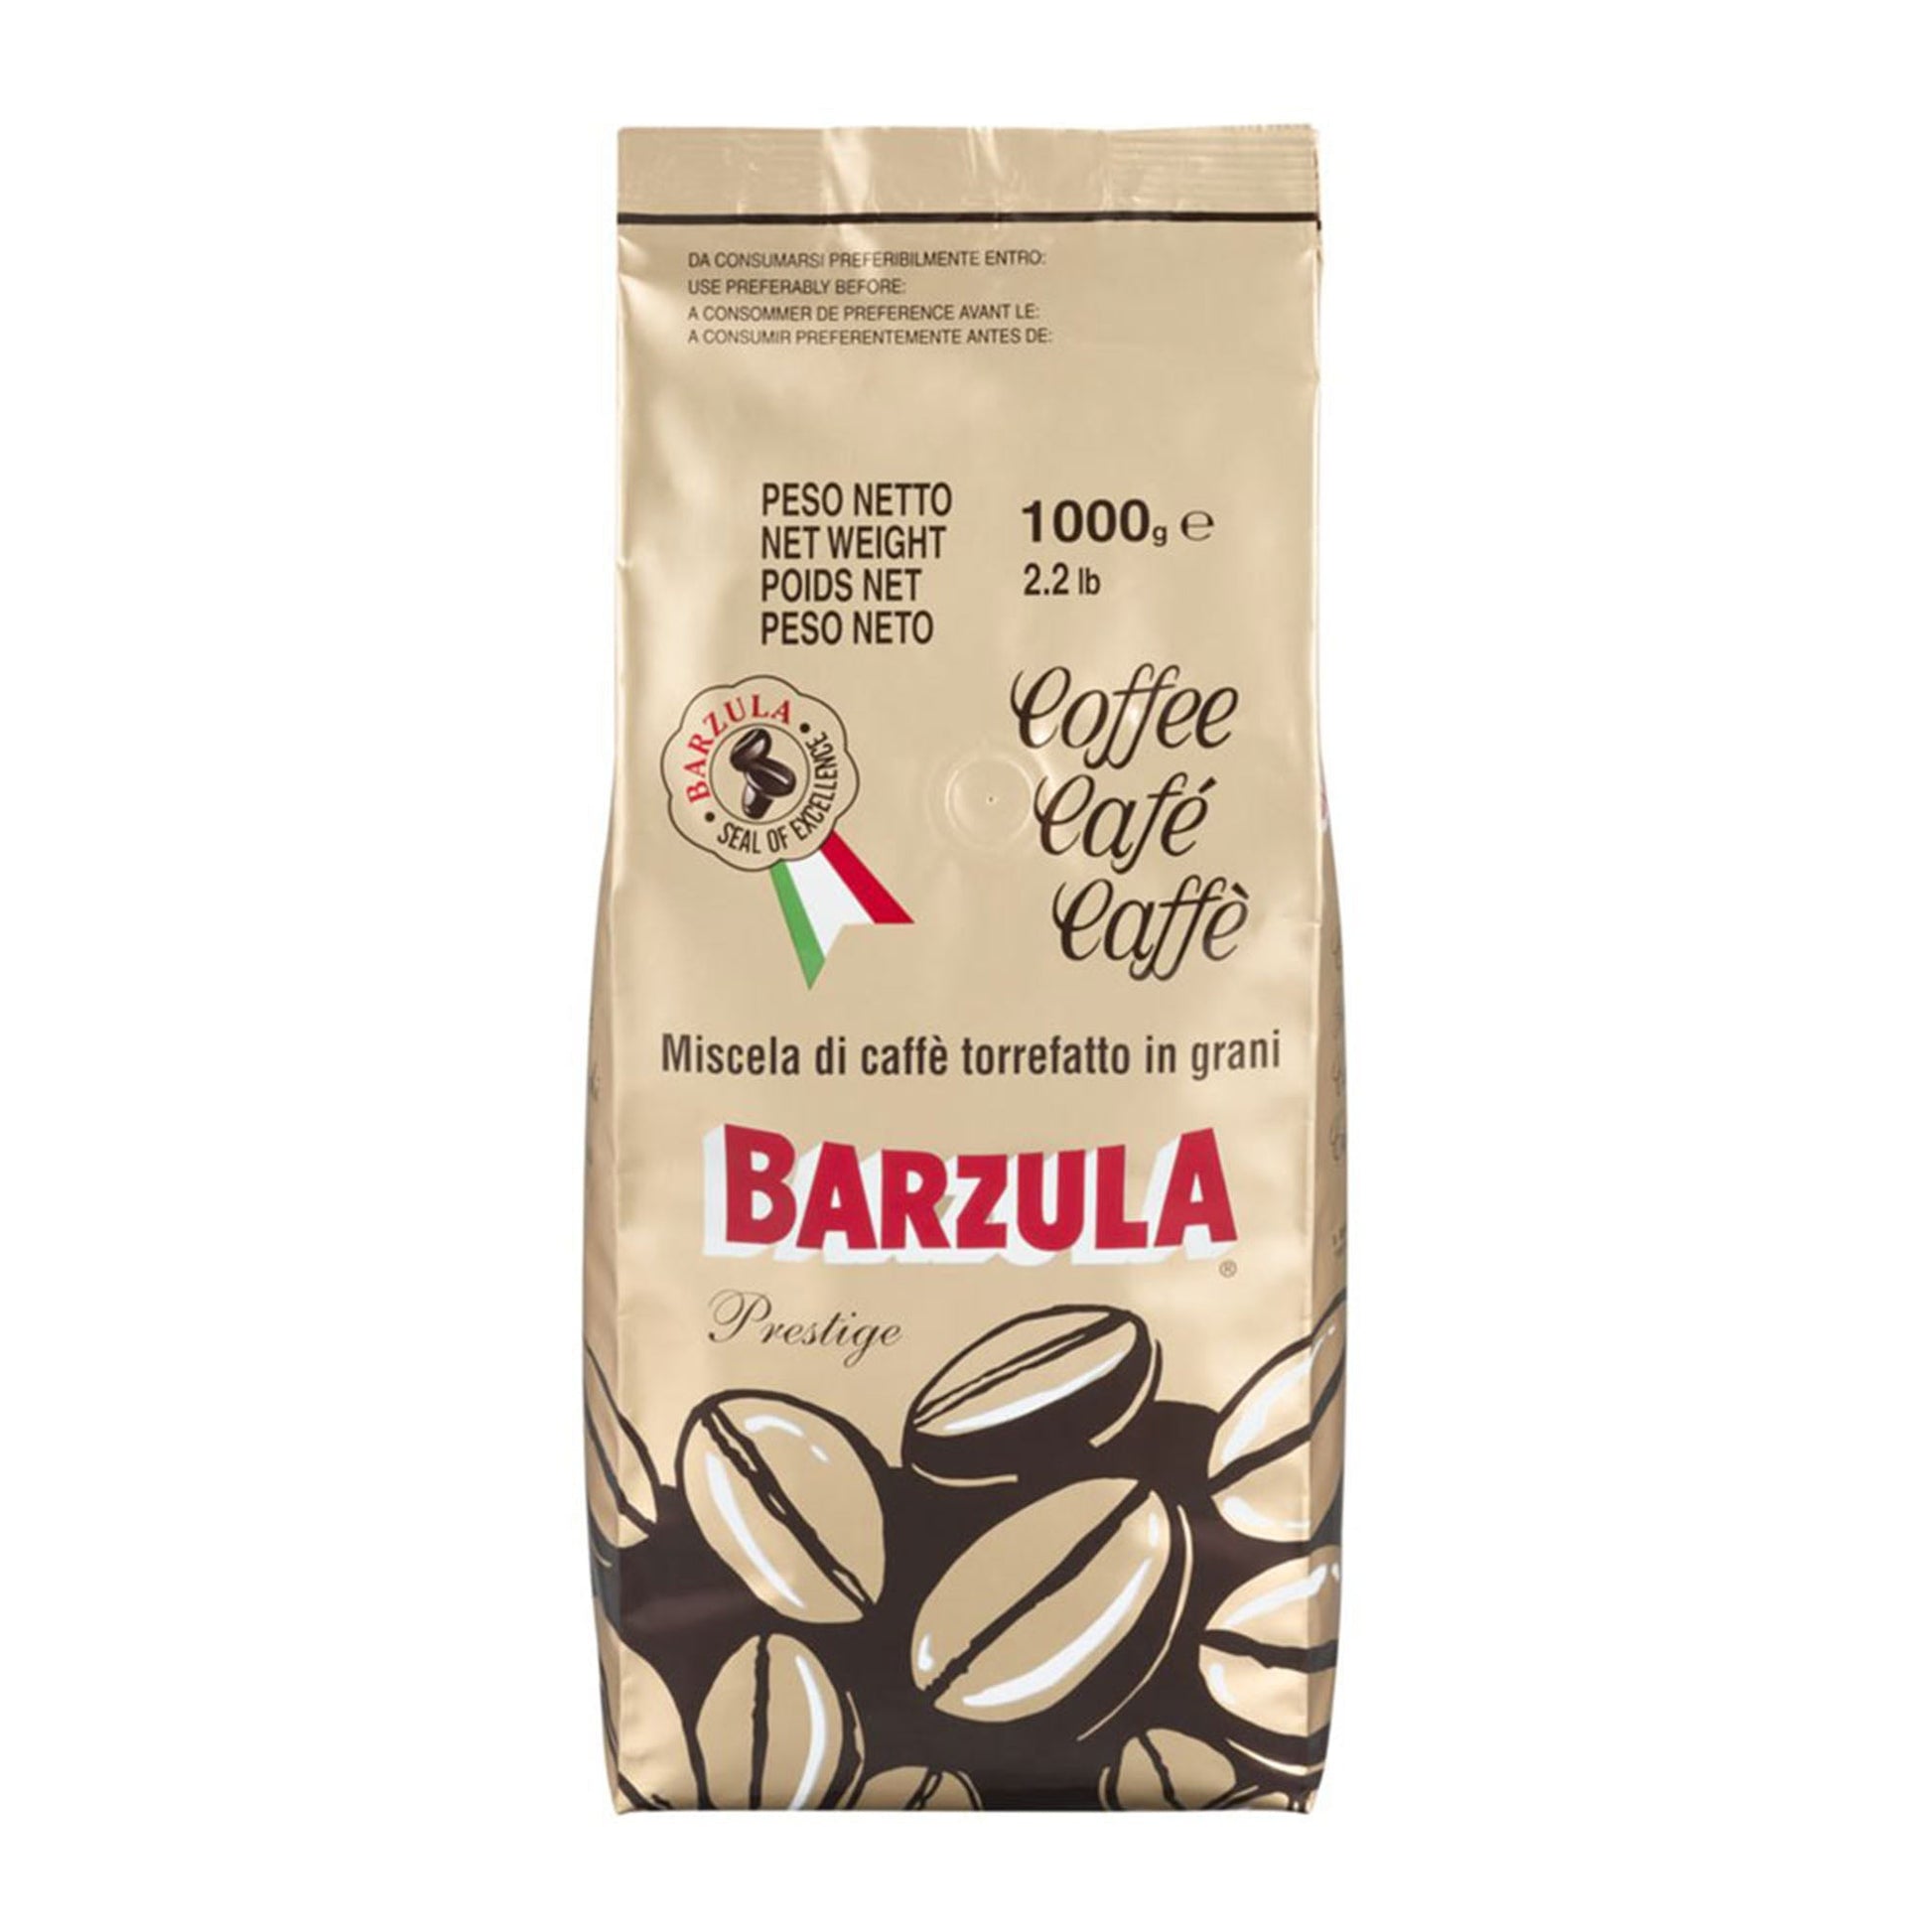 Barzula Espresso Beans 1Kg